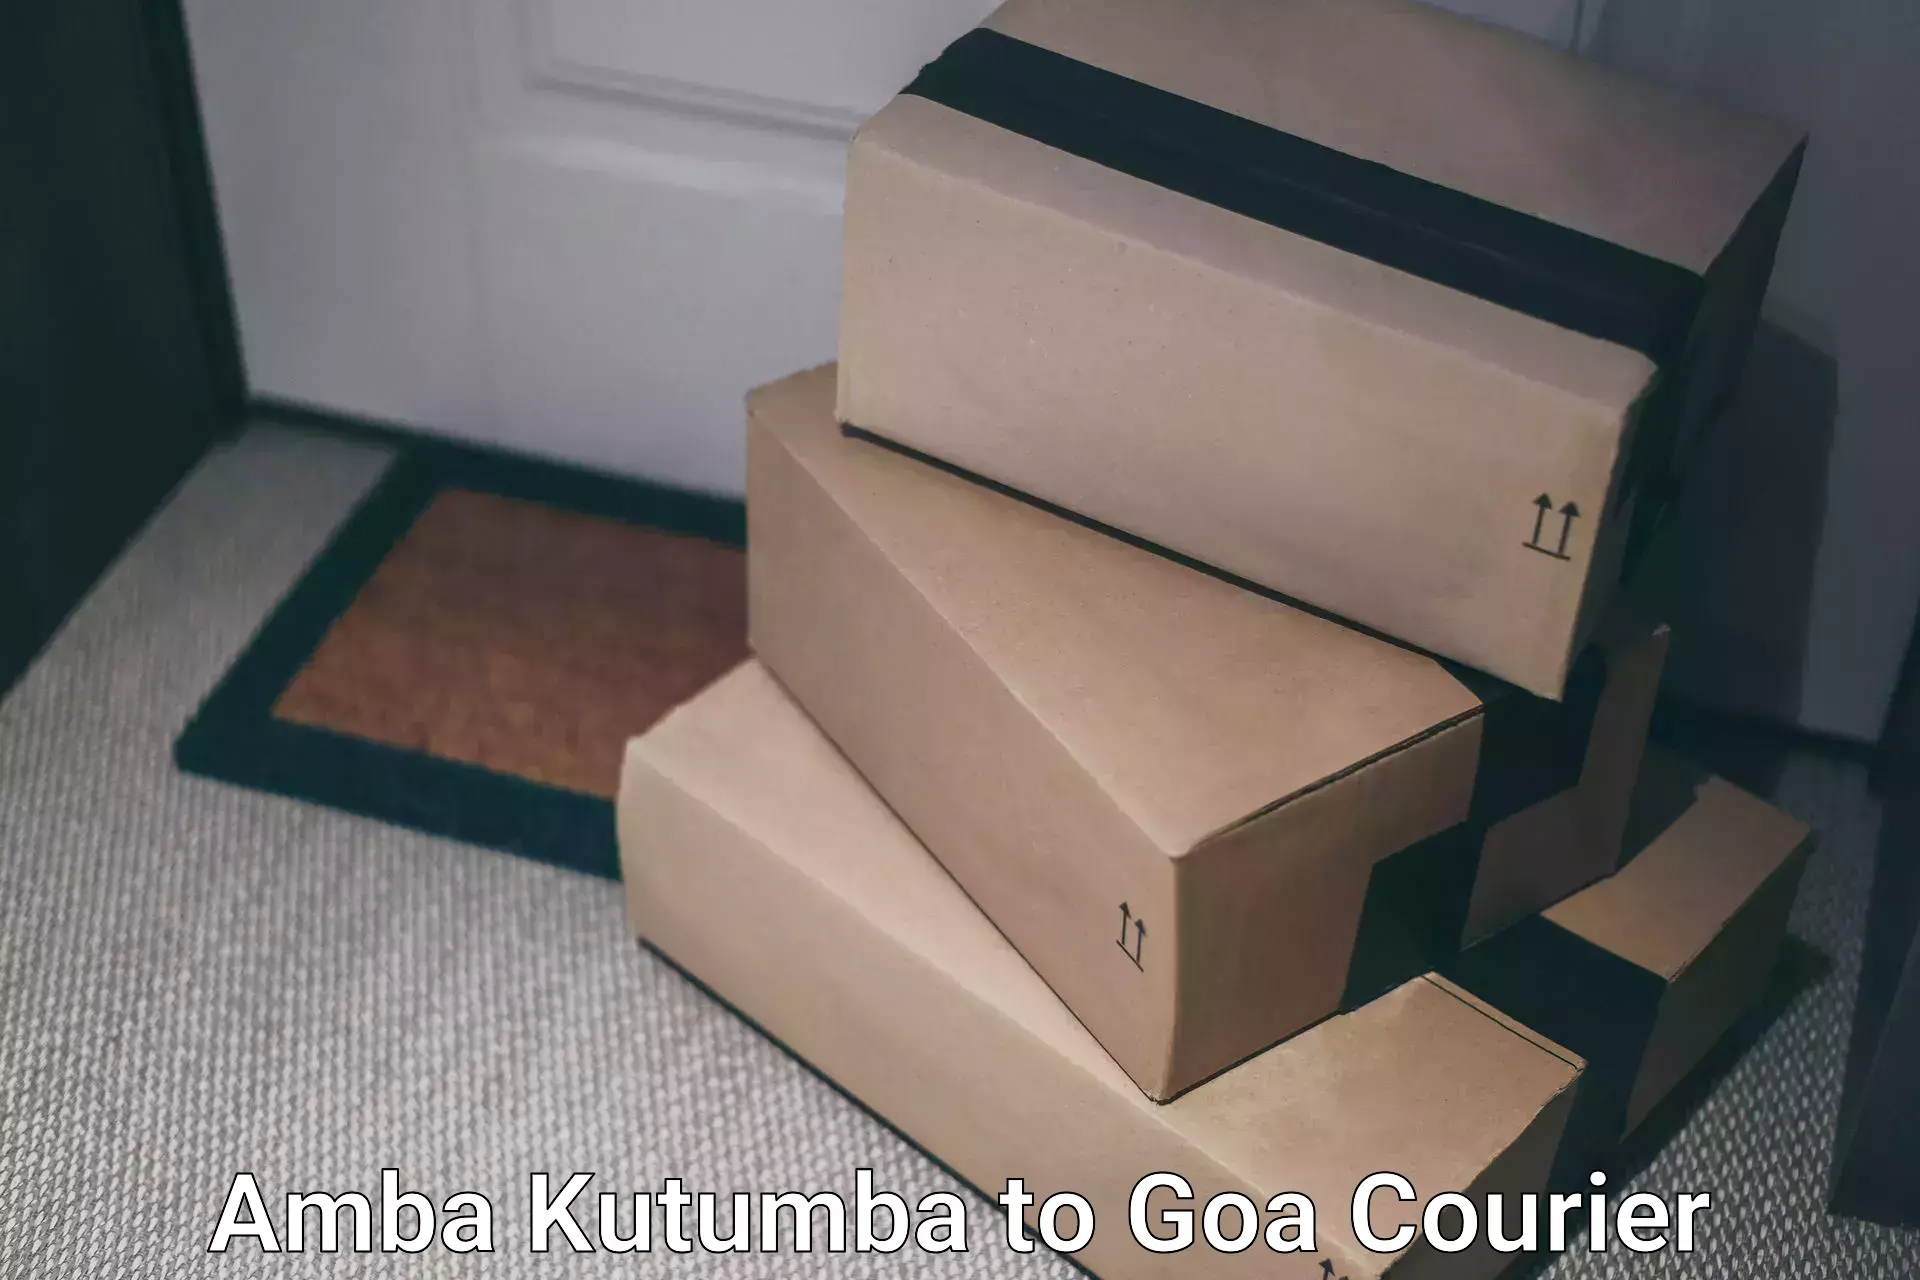 Next-day freight services Amba Kutumba to IIT Goa